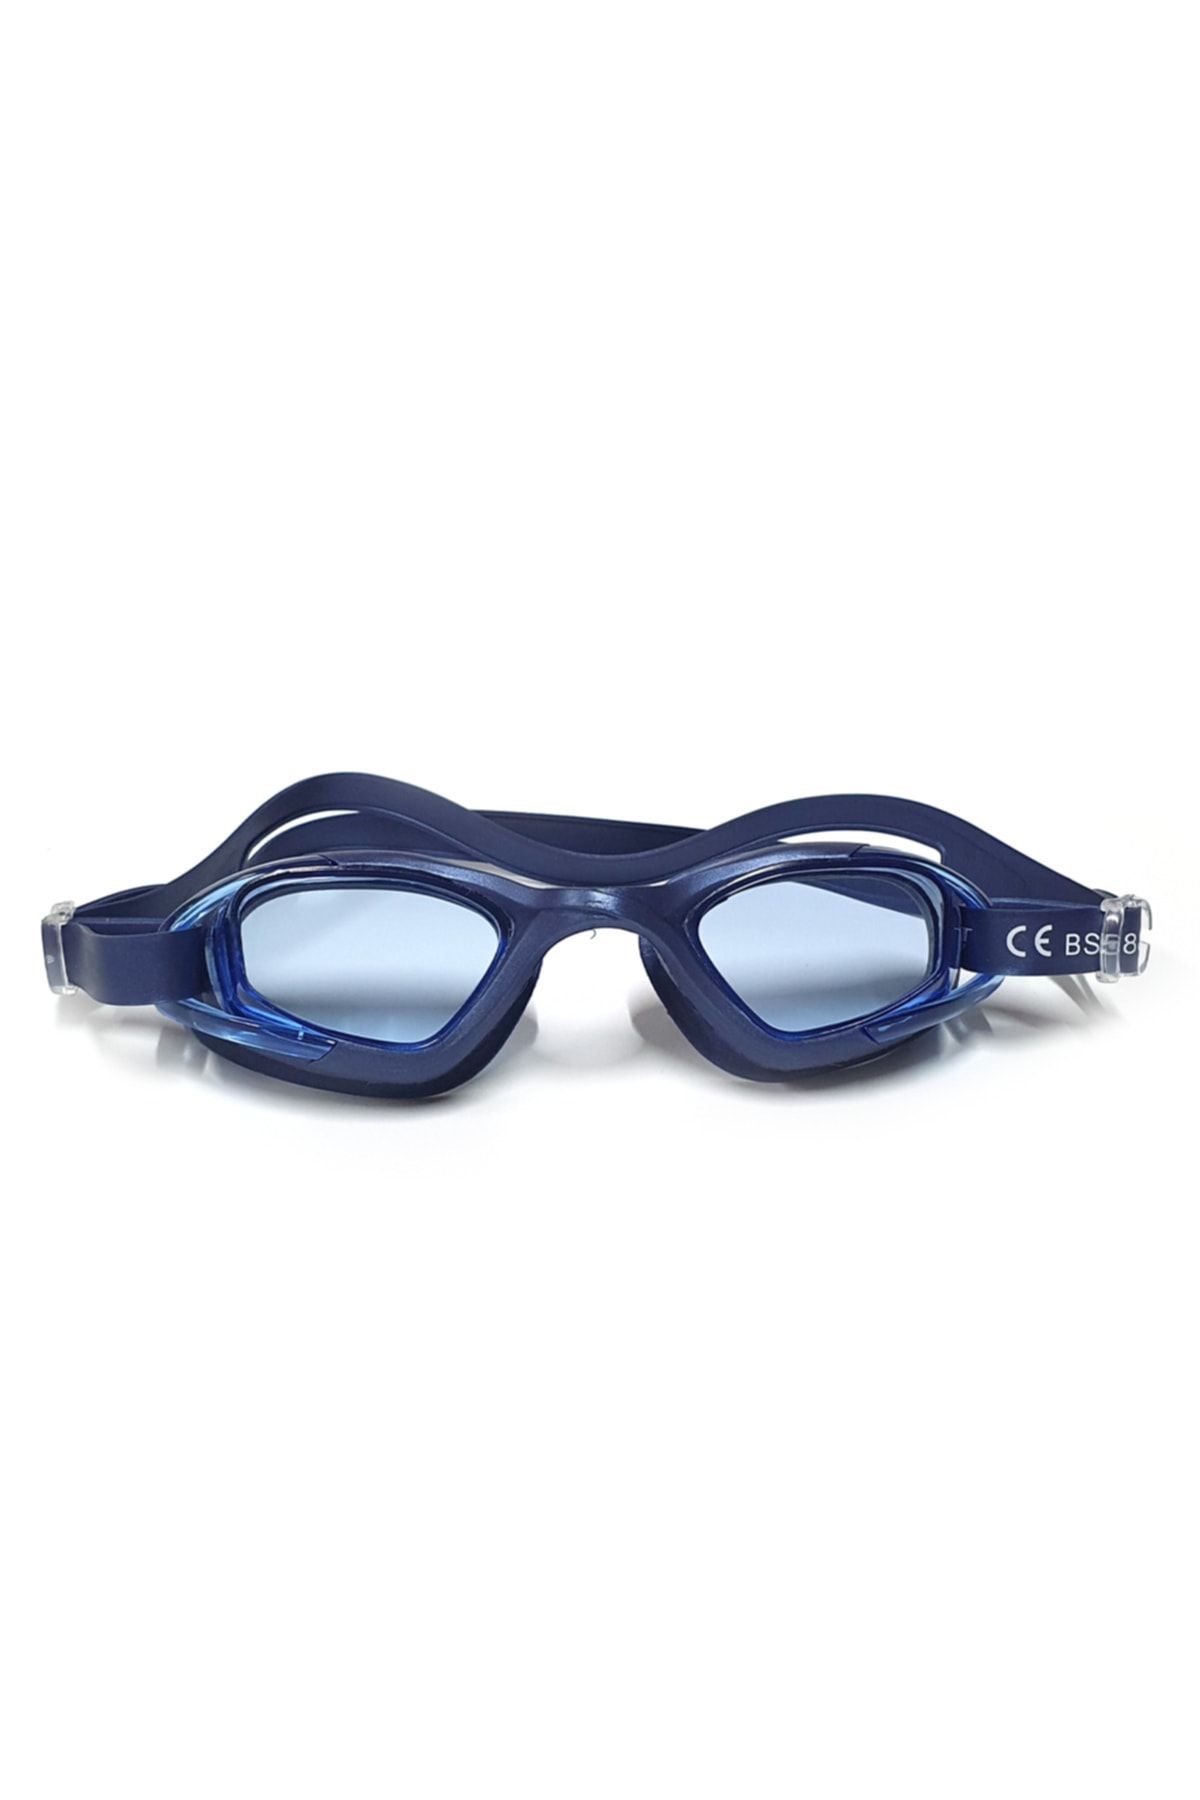 Tosima Yetişkin Yüzücü Gözlüğü Silikon Havuz Gözlüğü Deniz Gözlüğü Antifog